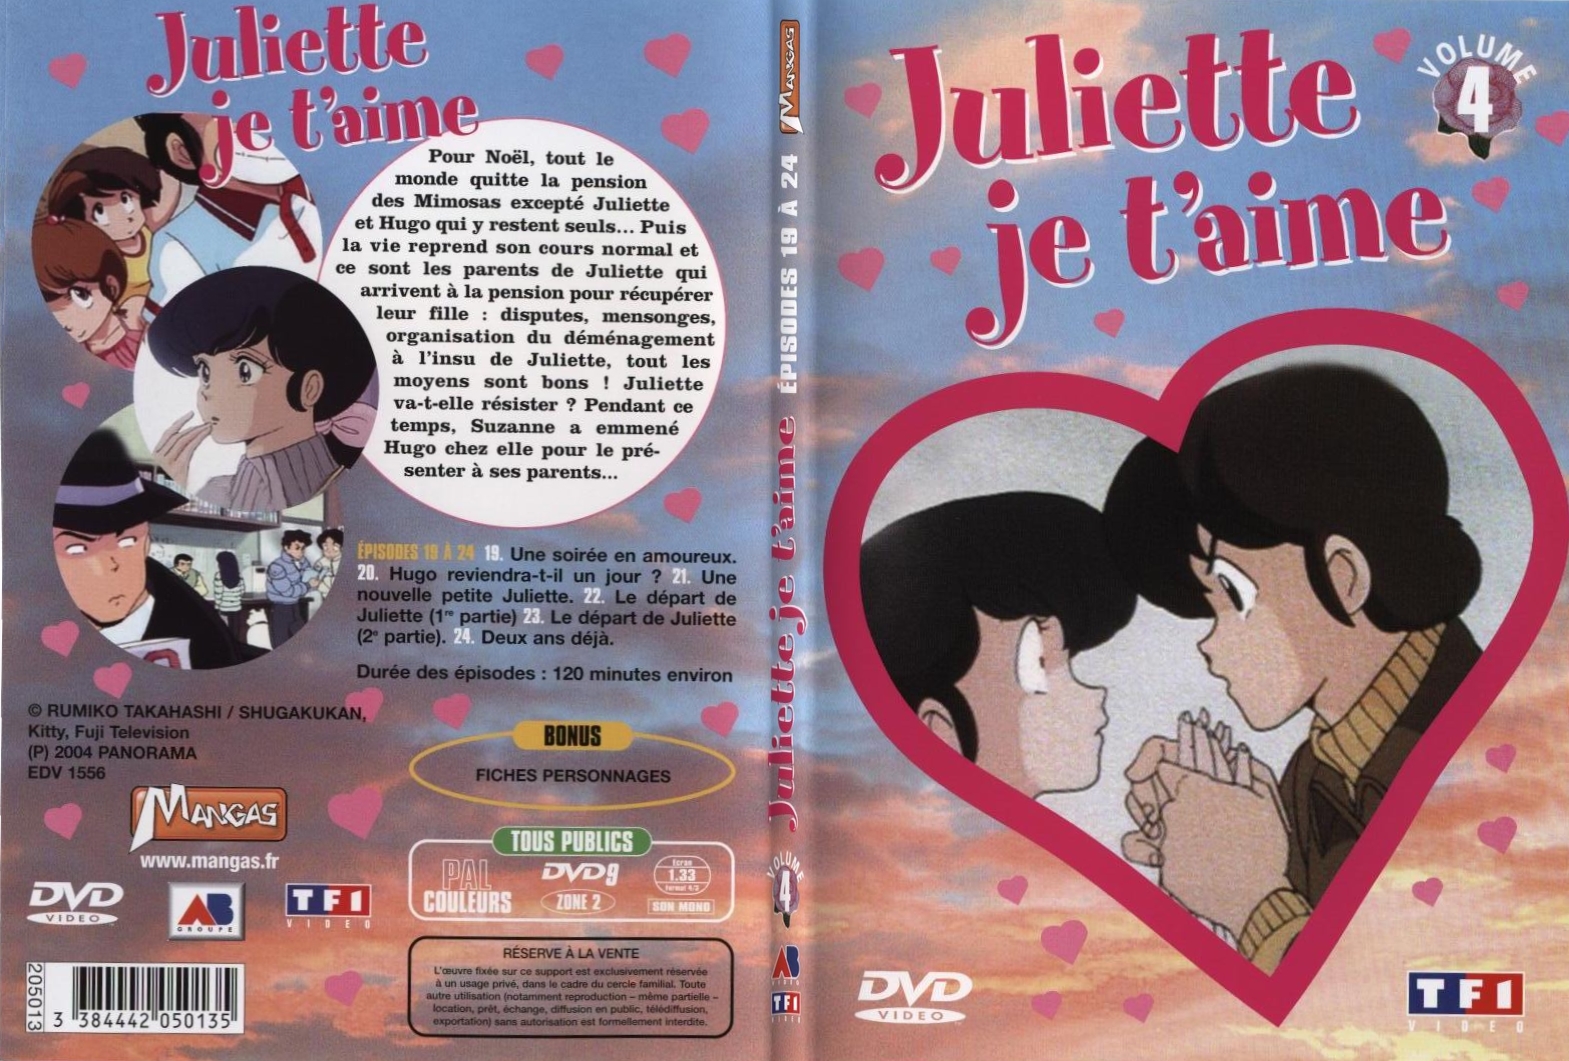 Jaquette DVD Juliette je t